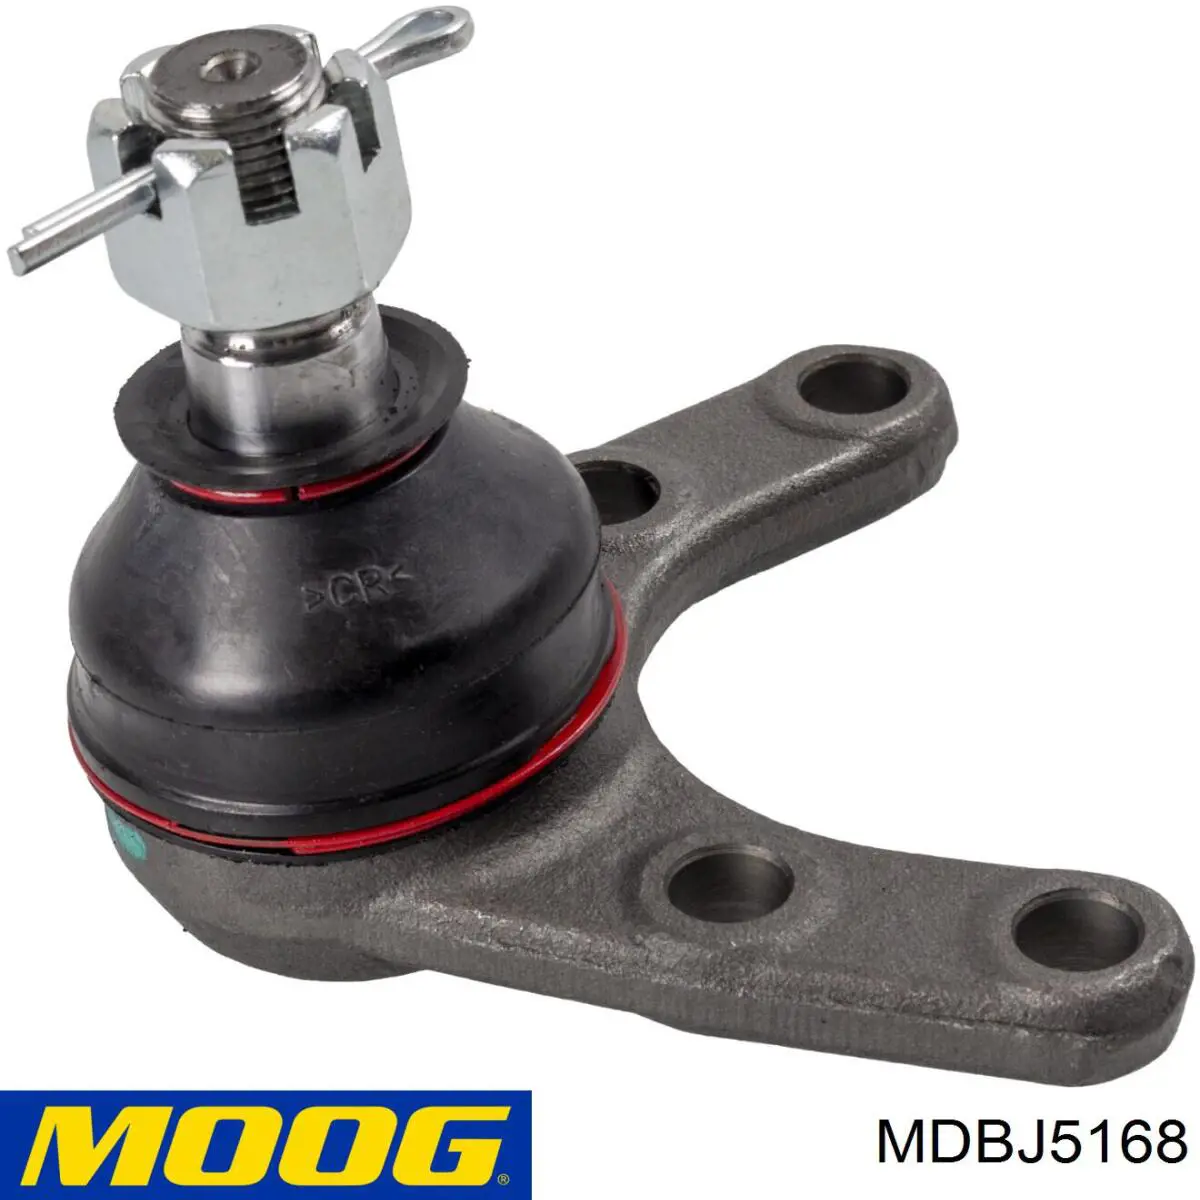 Rótula de suspensión inferior MDBJ5168 Moog